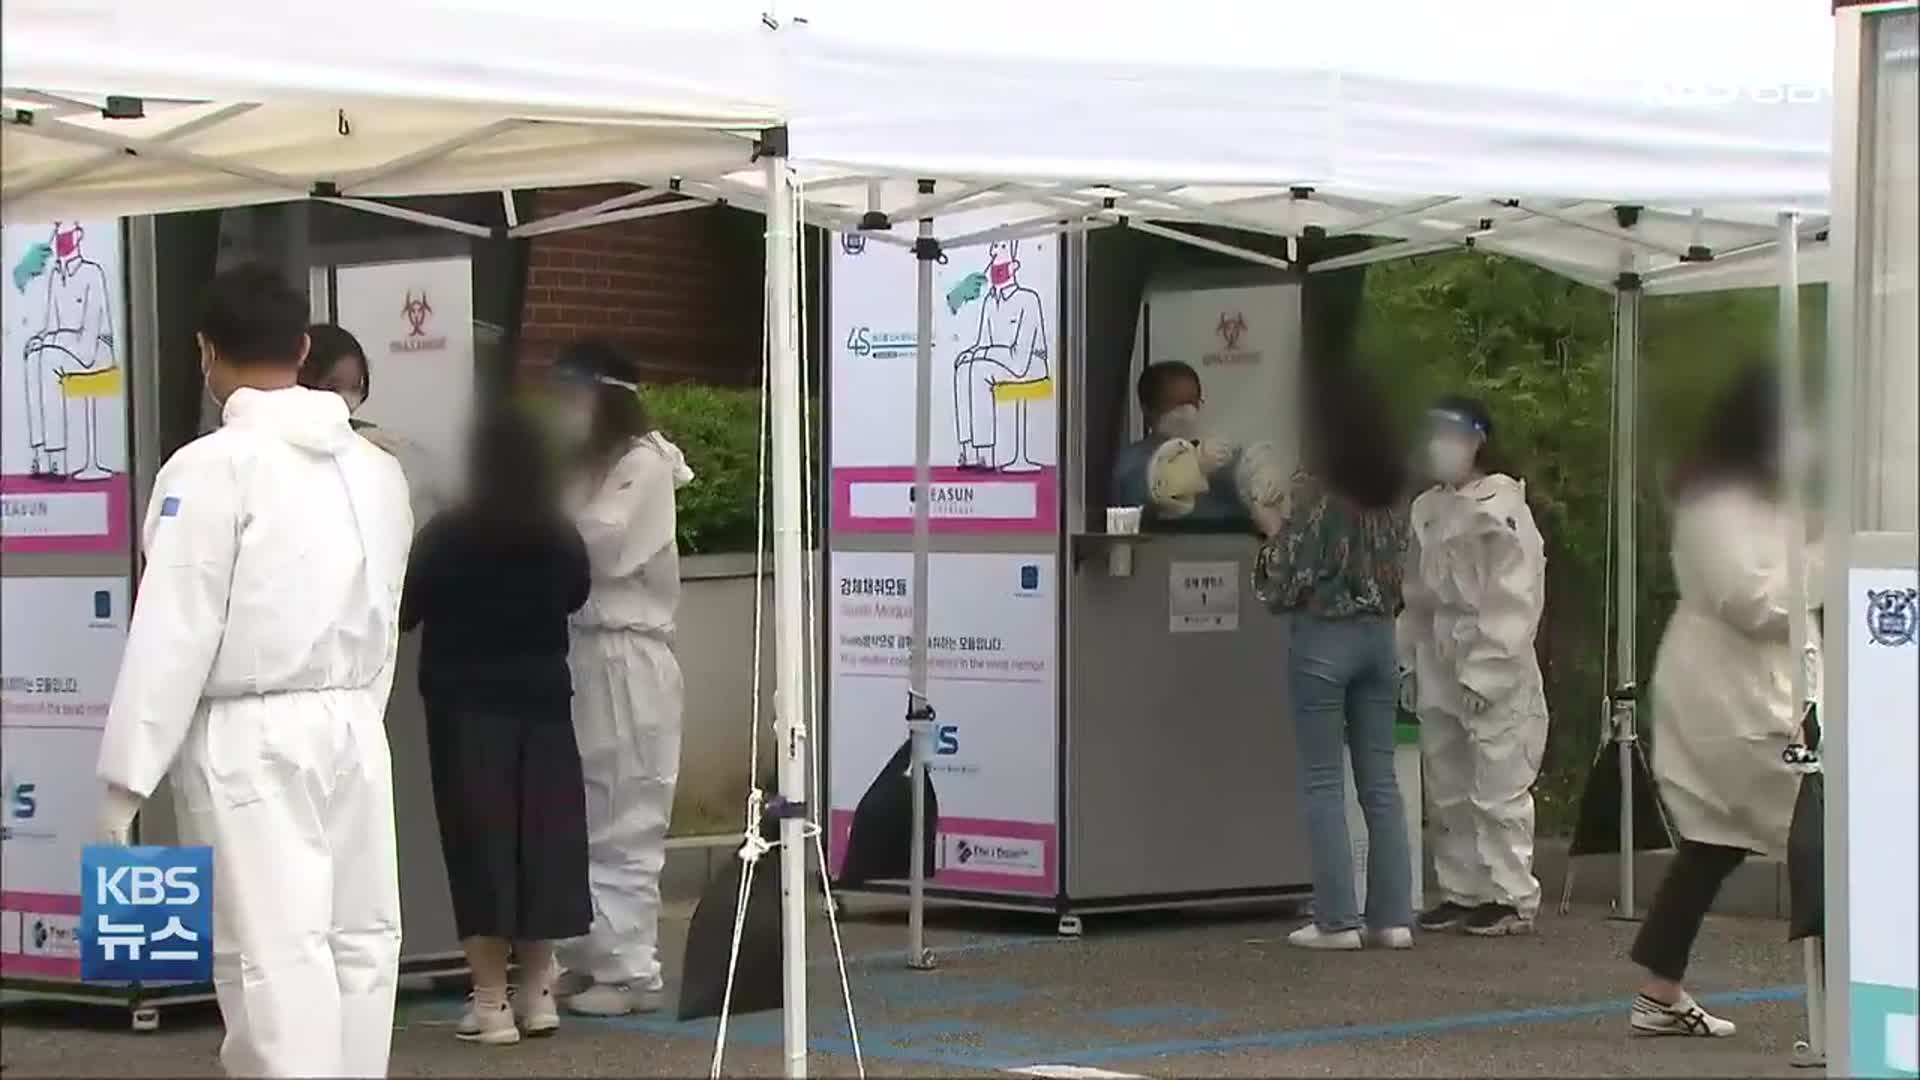 경남 코로나19 신규 확진 6명…한달 반 만에 한 자릿 수